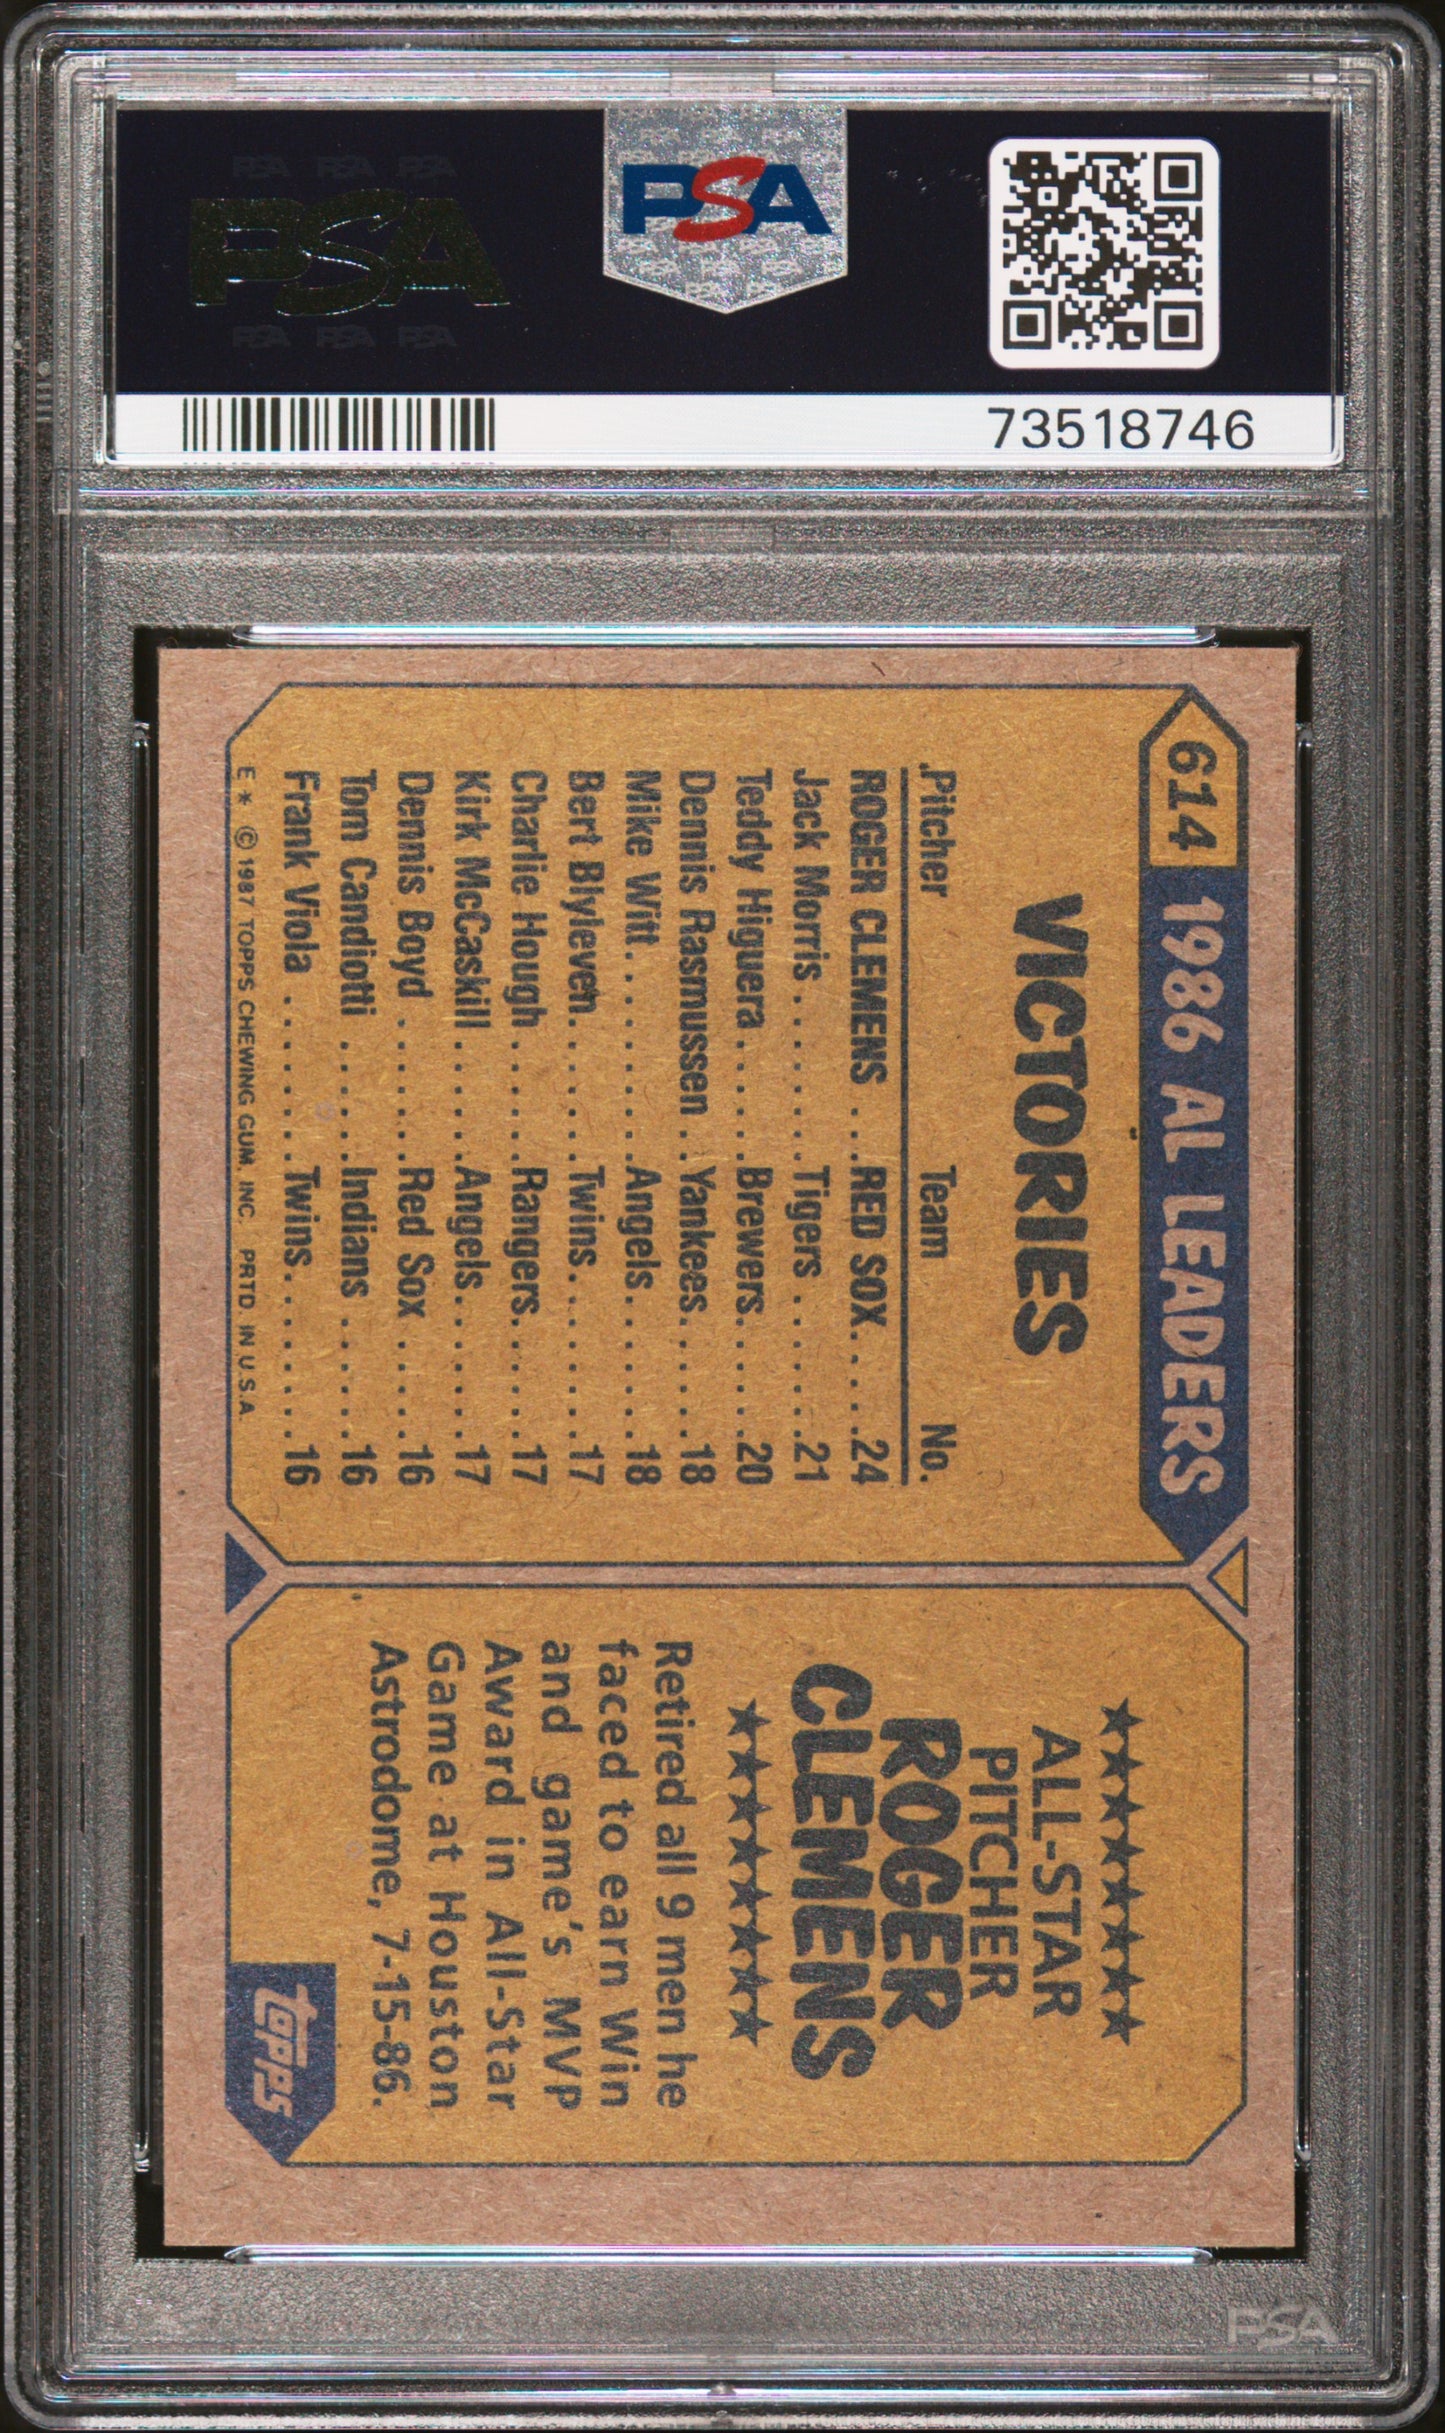 1987 Topps Baseball Roger Clemens #614 Psa 8 73518746